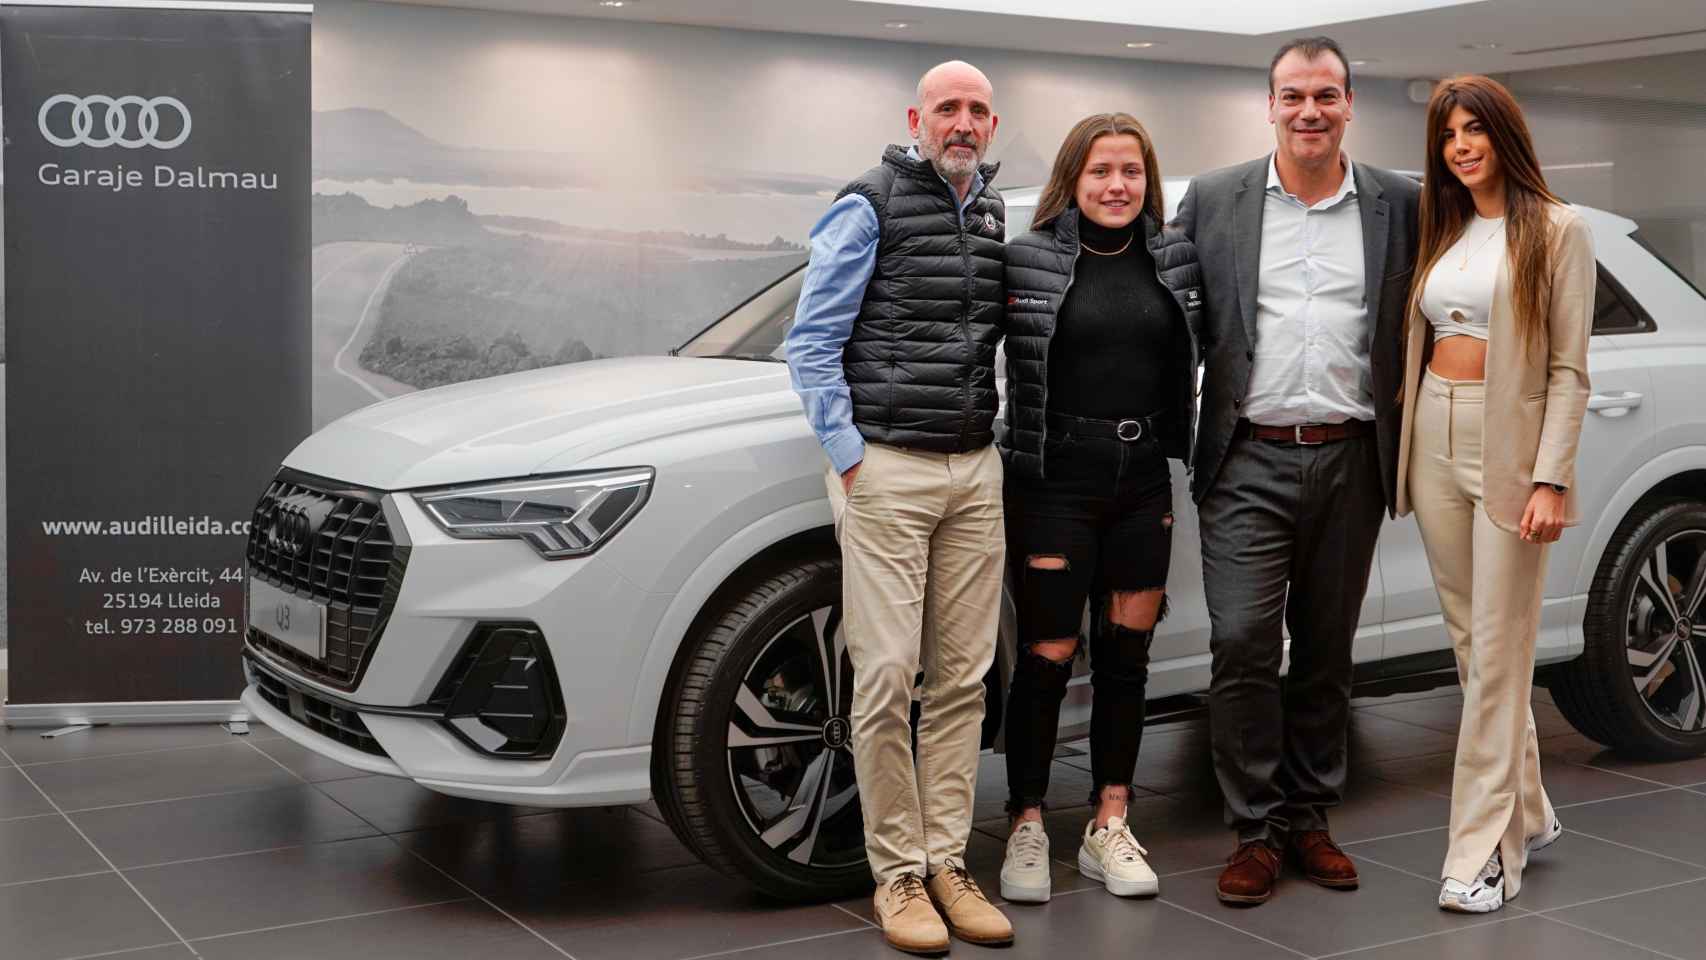 La jugadora Claudia Pina, nueva embajadora de la marca Audi.